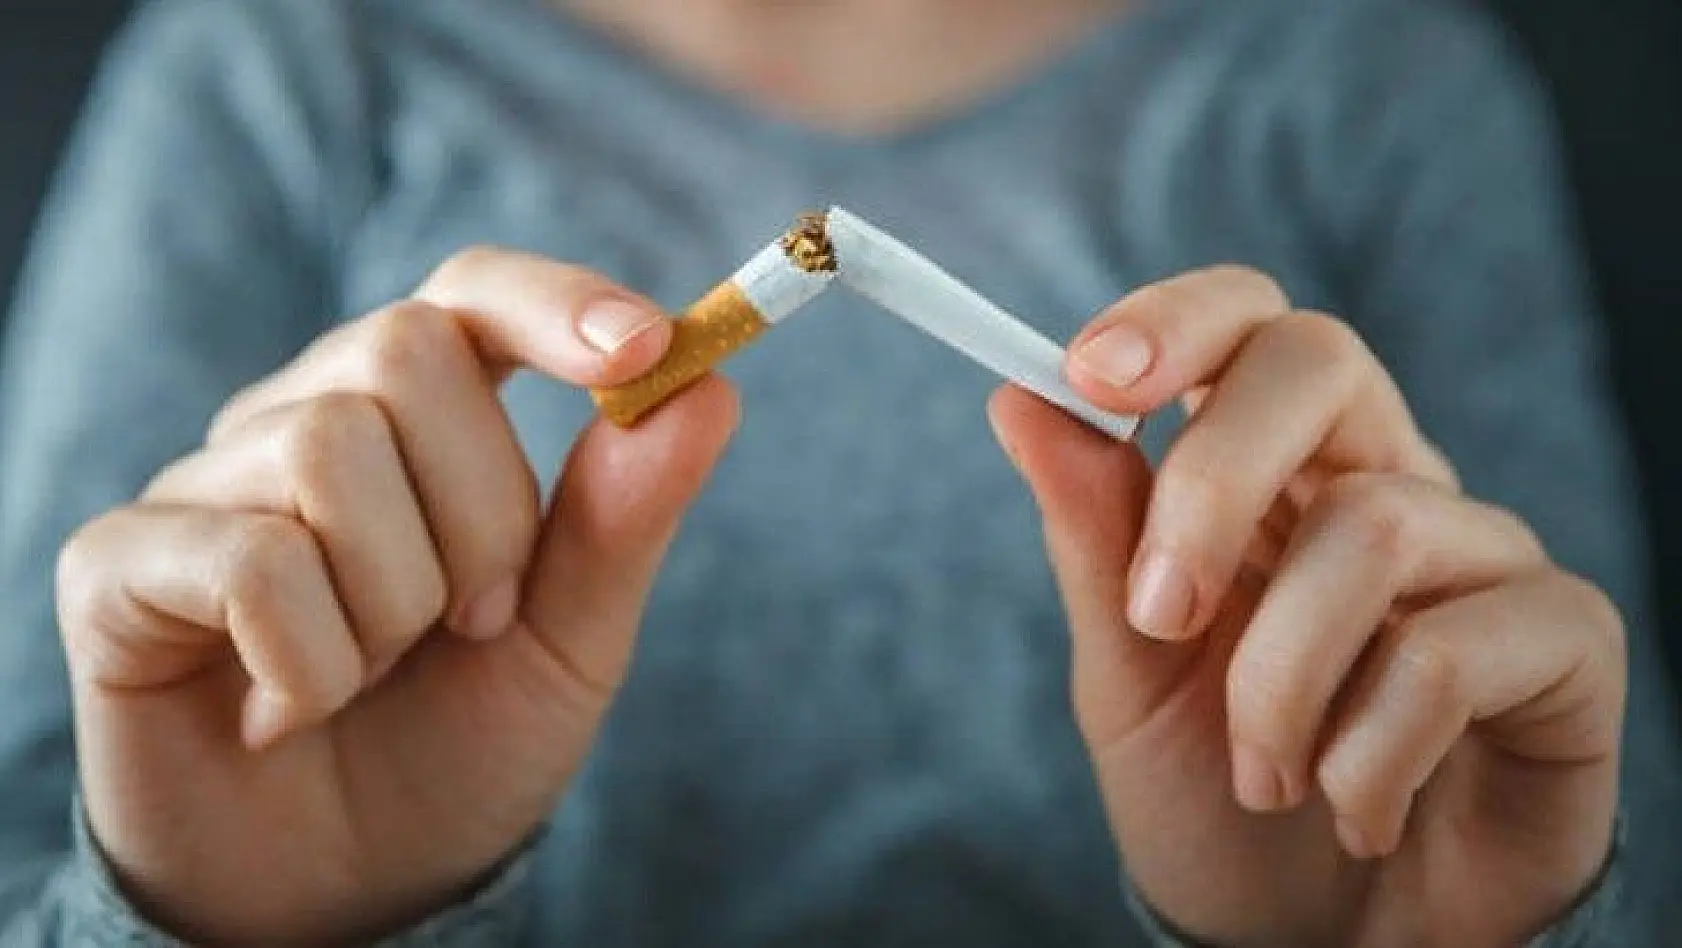 Prof. Dr. Açık: 'Çocuklarımızın sigaraya kolayca  ulaşmalarının önüne geçmeliyiz'